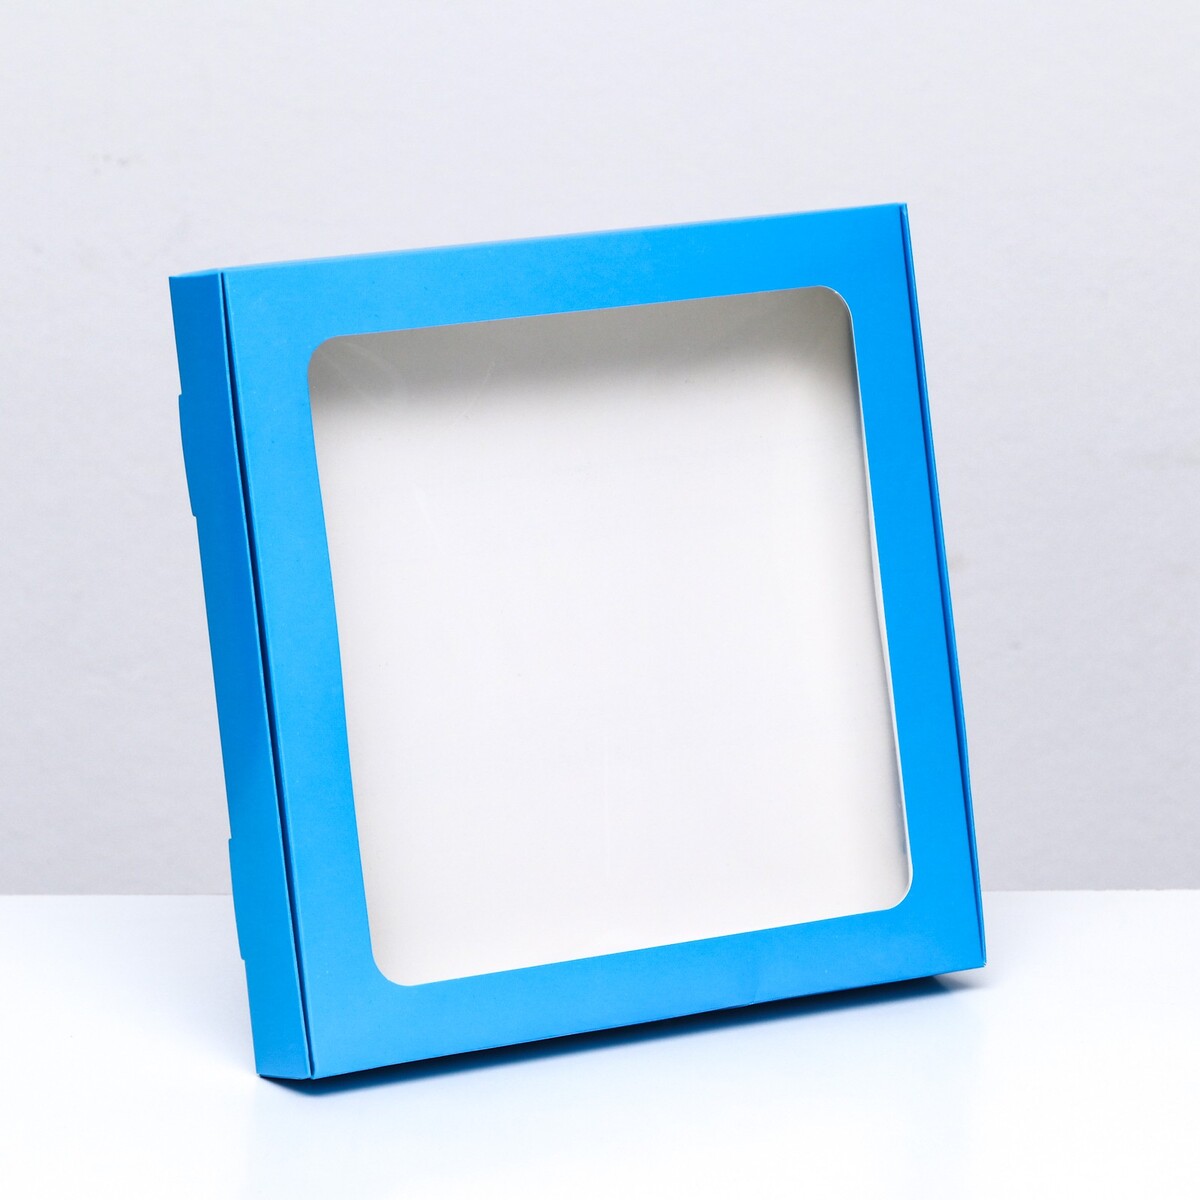 Коробка самосборная с окном синяя, 21 х 21 х 3 см